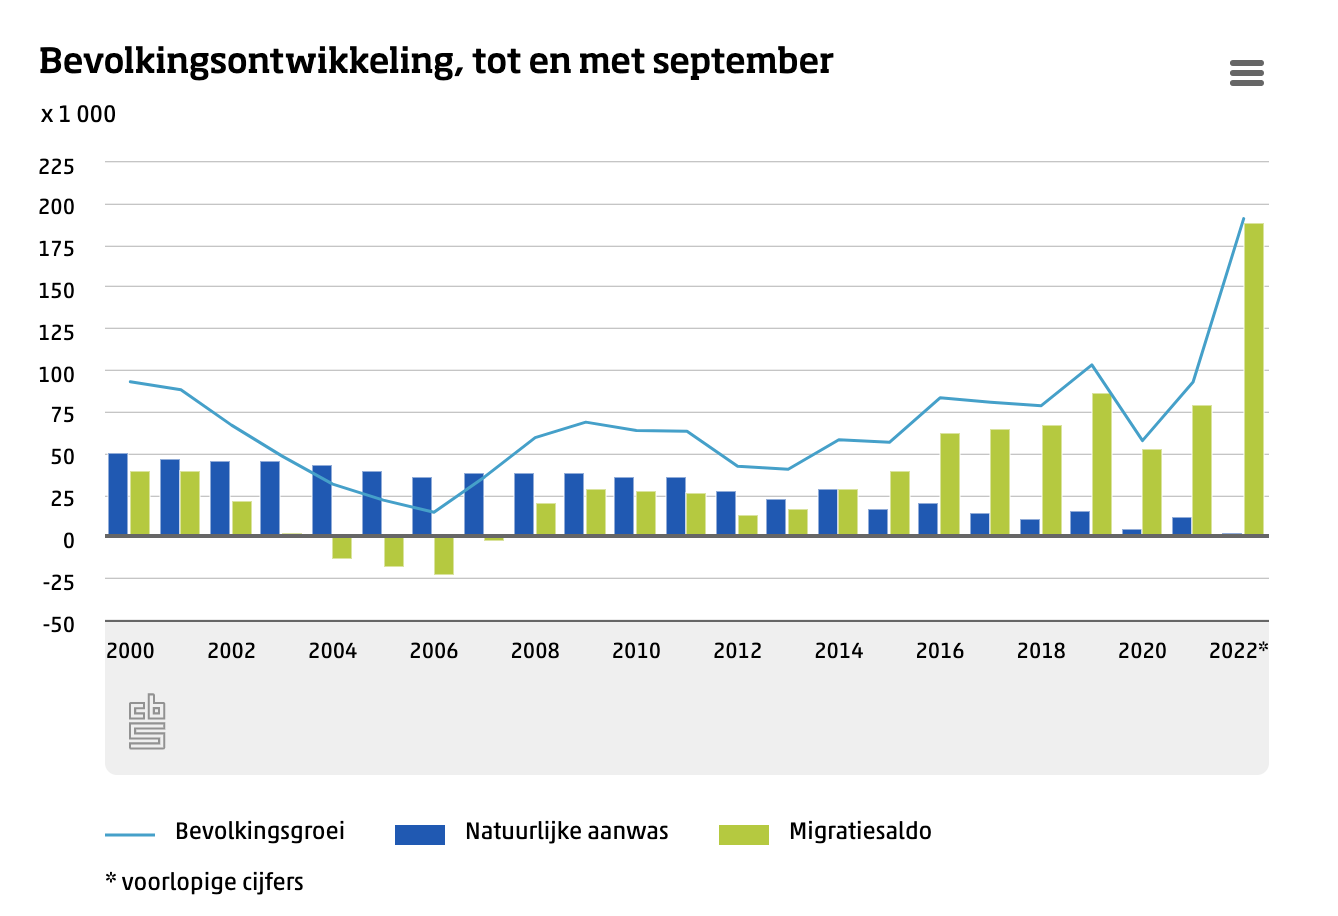 Bevolkingsontwikkeling Nederland, bron: CBS